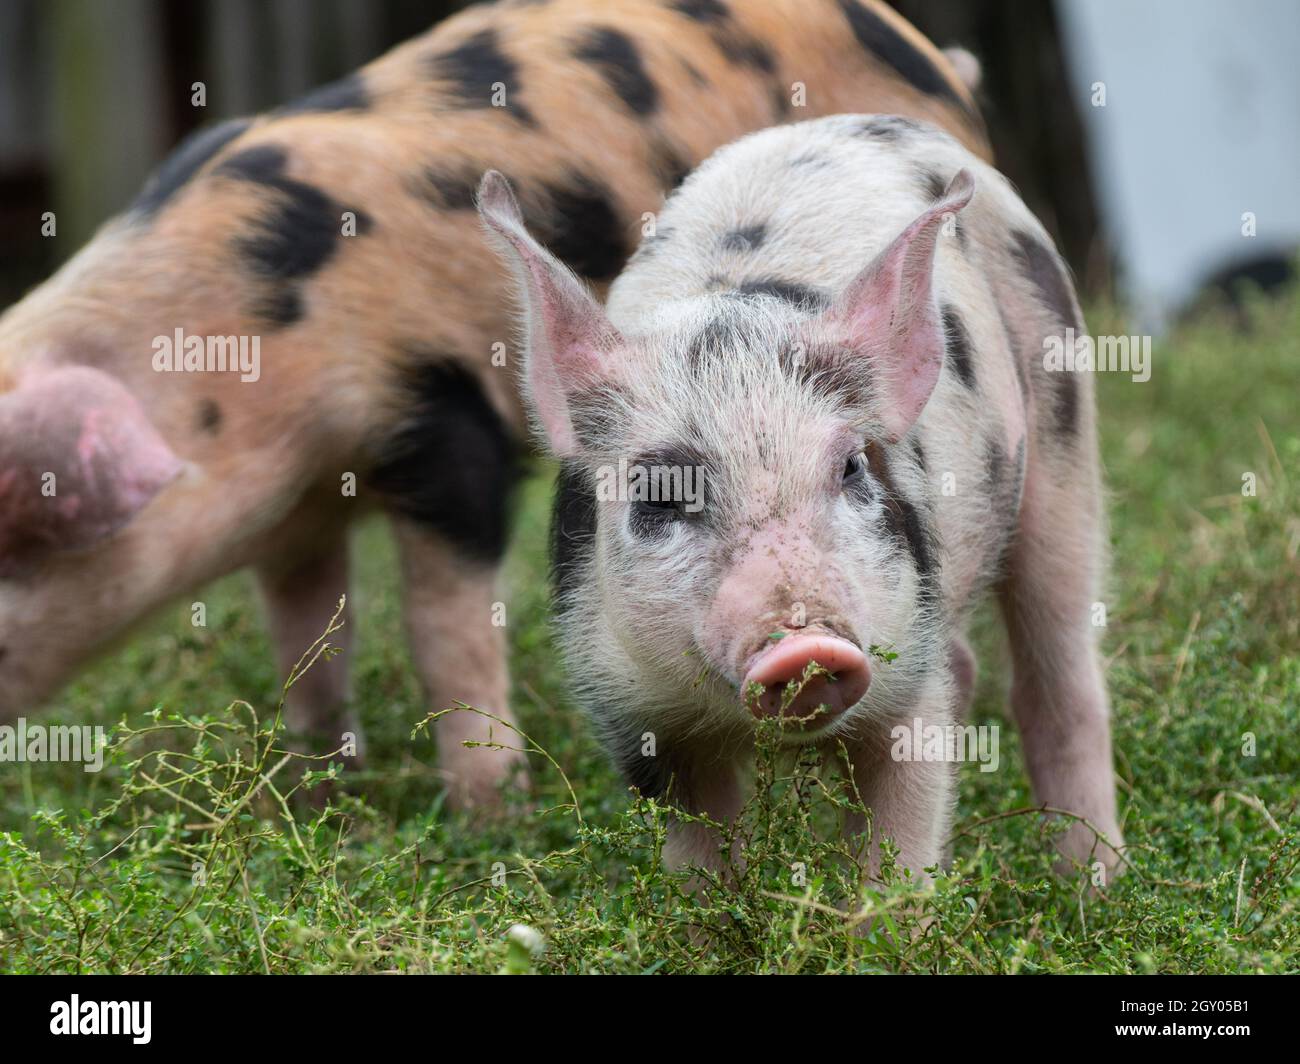 Nahaufnahme eines niedlichen kleinen Schweins mit einer rosa Schnauze und Ohren, weiße Borsten mit schwarzen Tupfen auf einem grasbewachsenen Feld Stockfoto